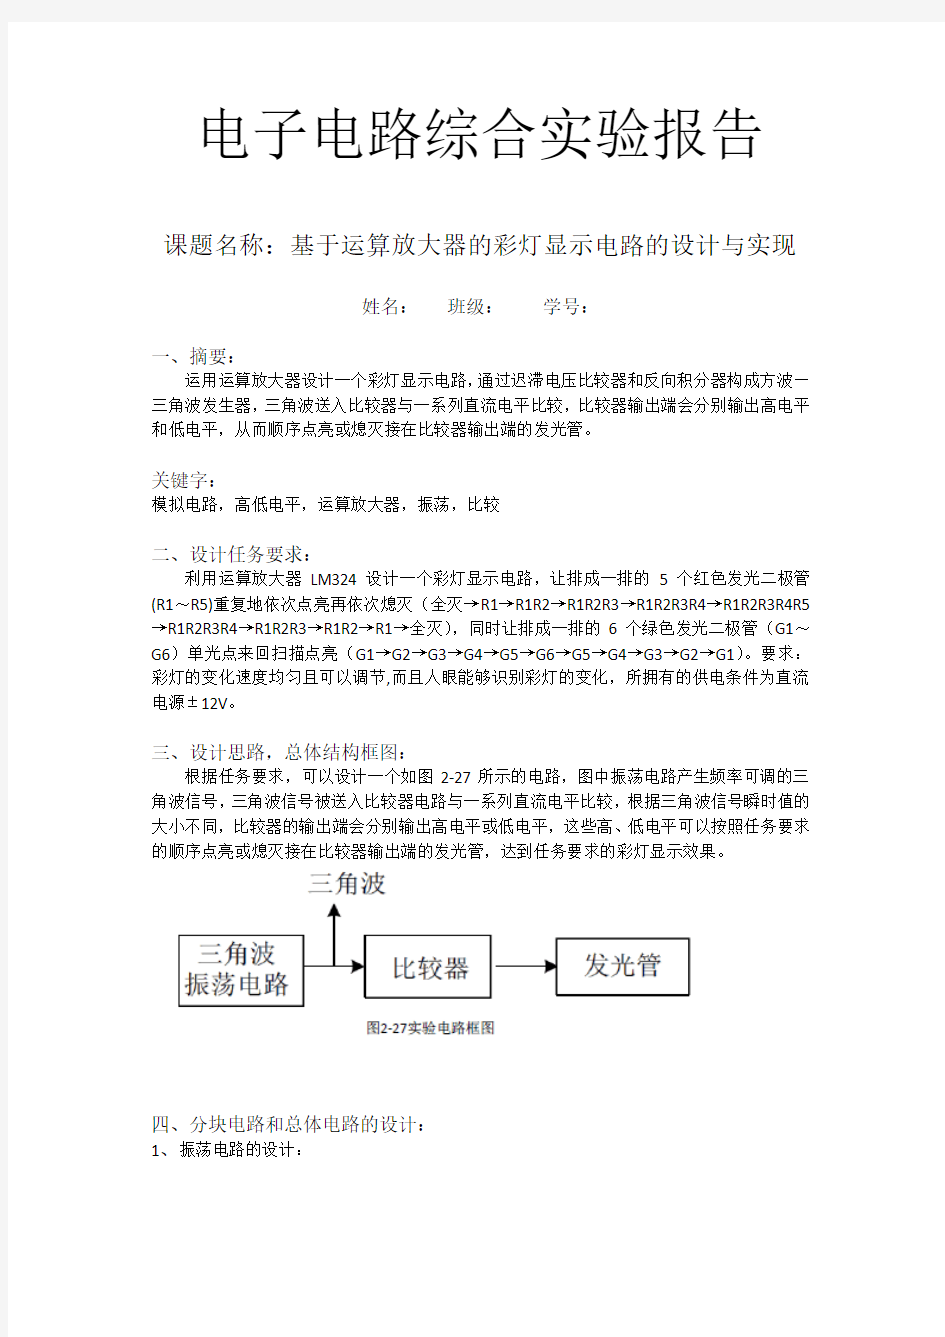 北京邮电大学电路实验报告 (小彩灯)